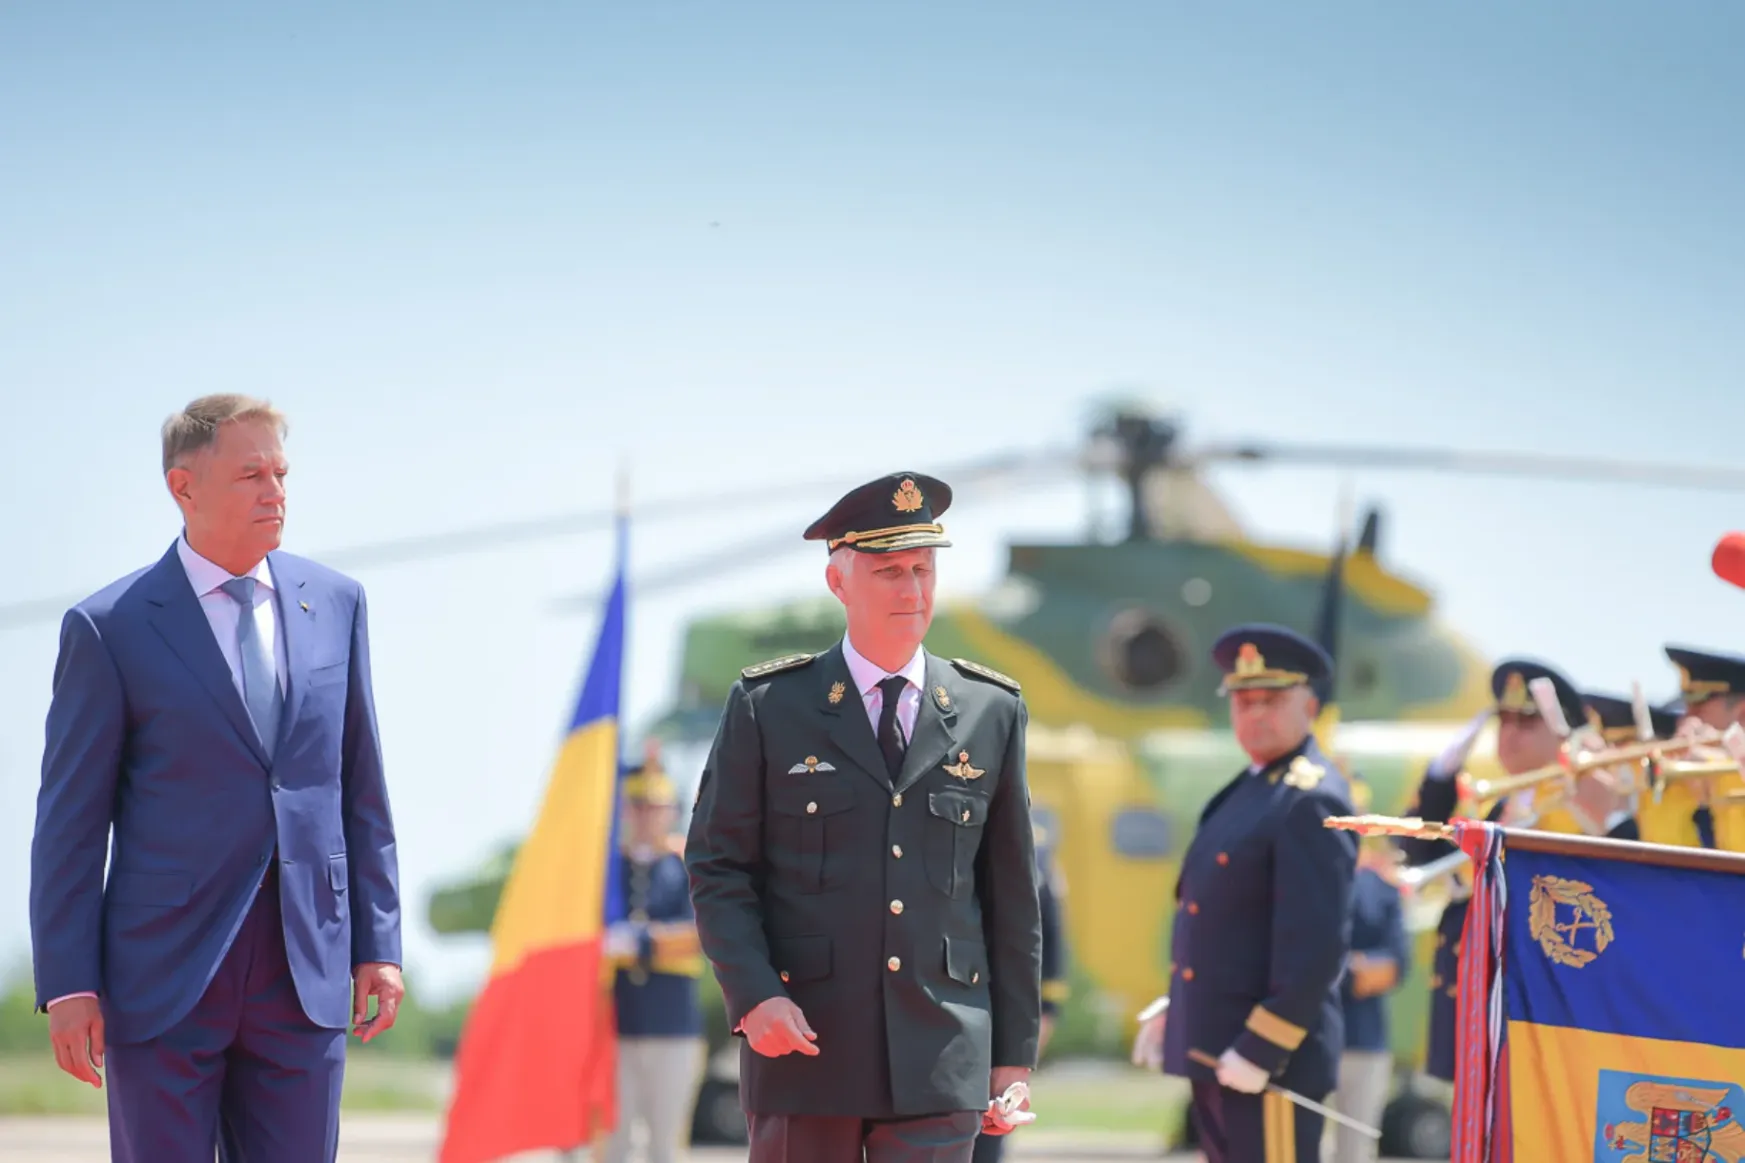 Miért jönnek az államfők közvetlenül a Mihail Kogălniceanu katonai bázisra, és miért nem tesznek látogatást a Cotroceni Palotában?